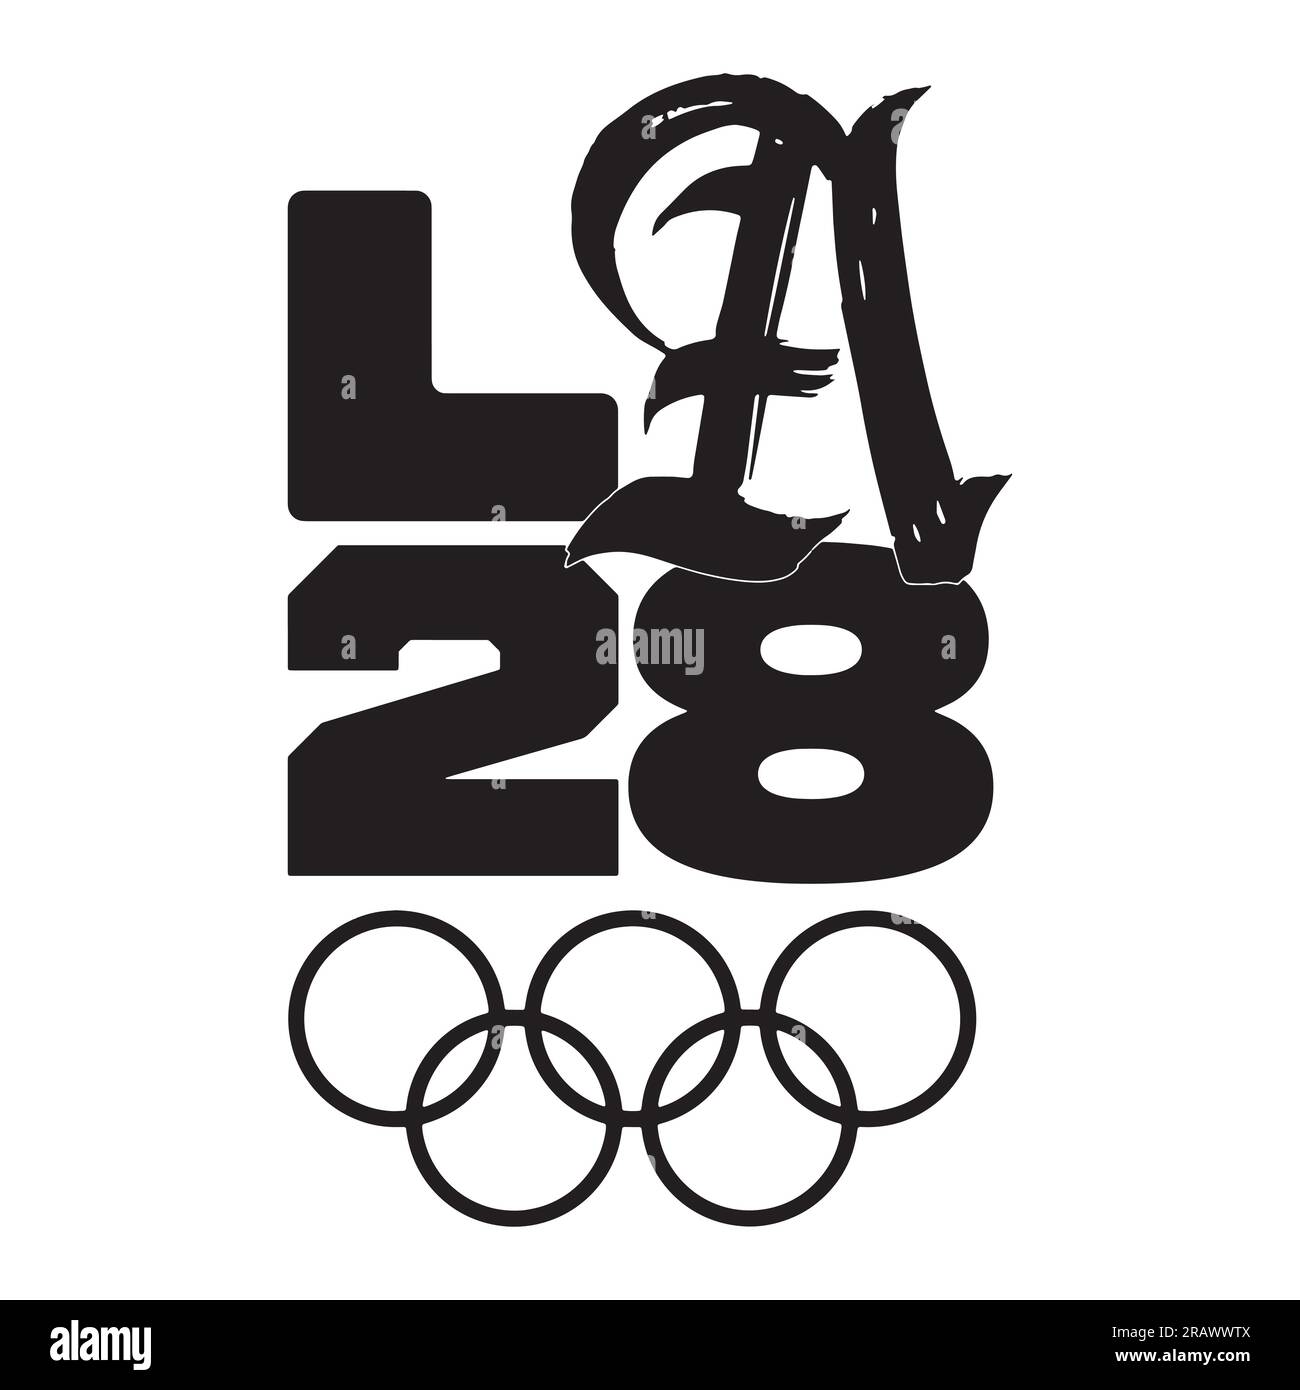 Logotipo de los Juegos Olímpicos de Verano 2028 en EE.UU. (Los Ángeles 2028) y fondo blanco, ilustración vectorial Resumen Imagen editable Ilustración del Vector